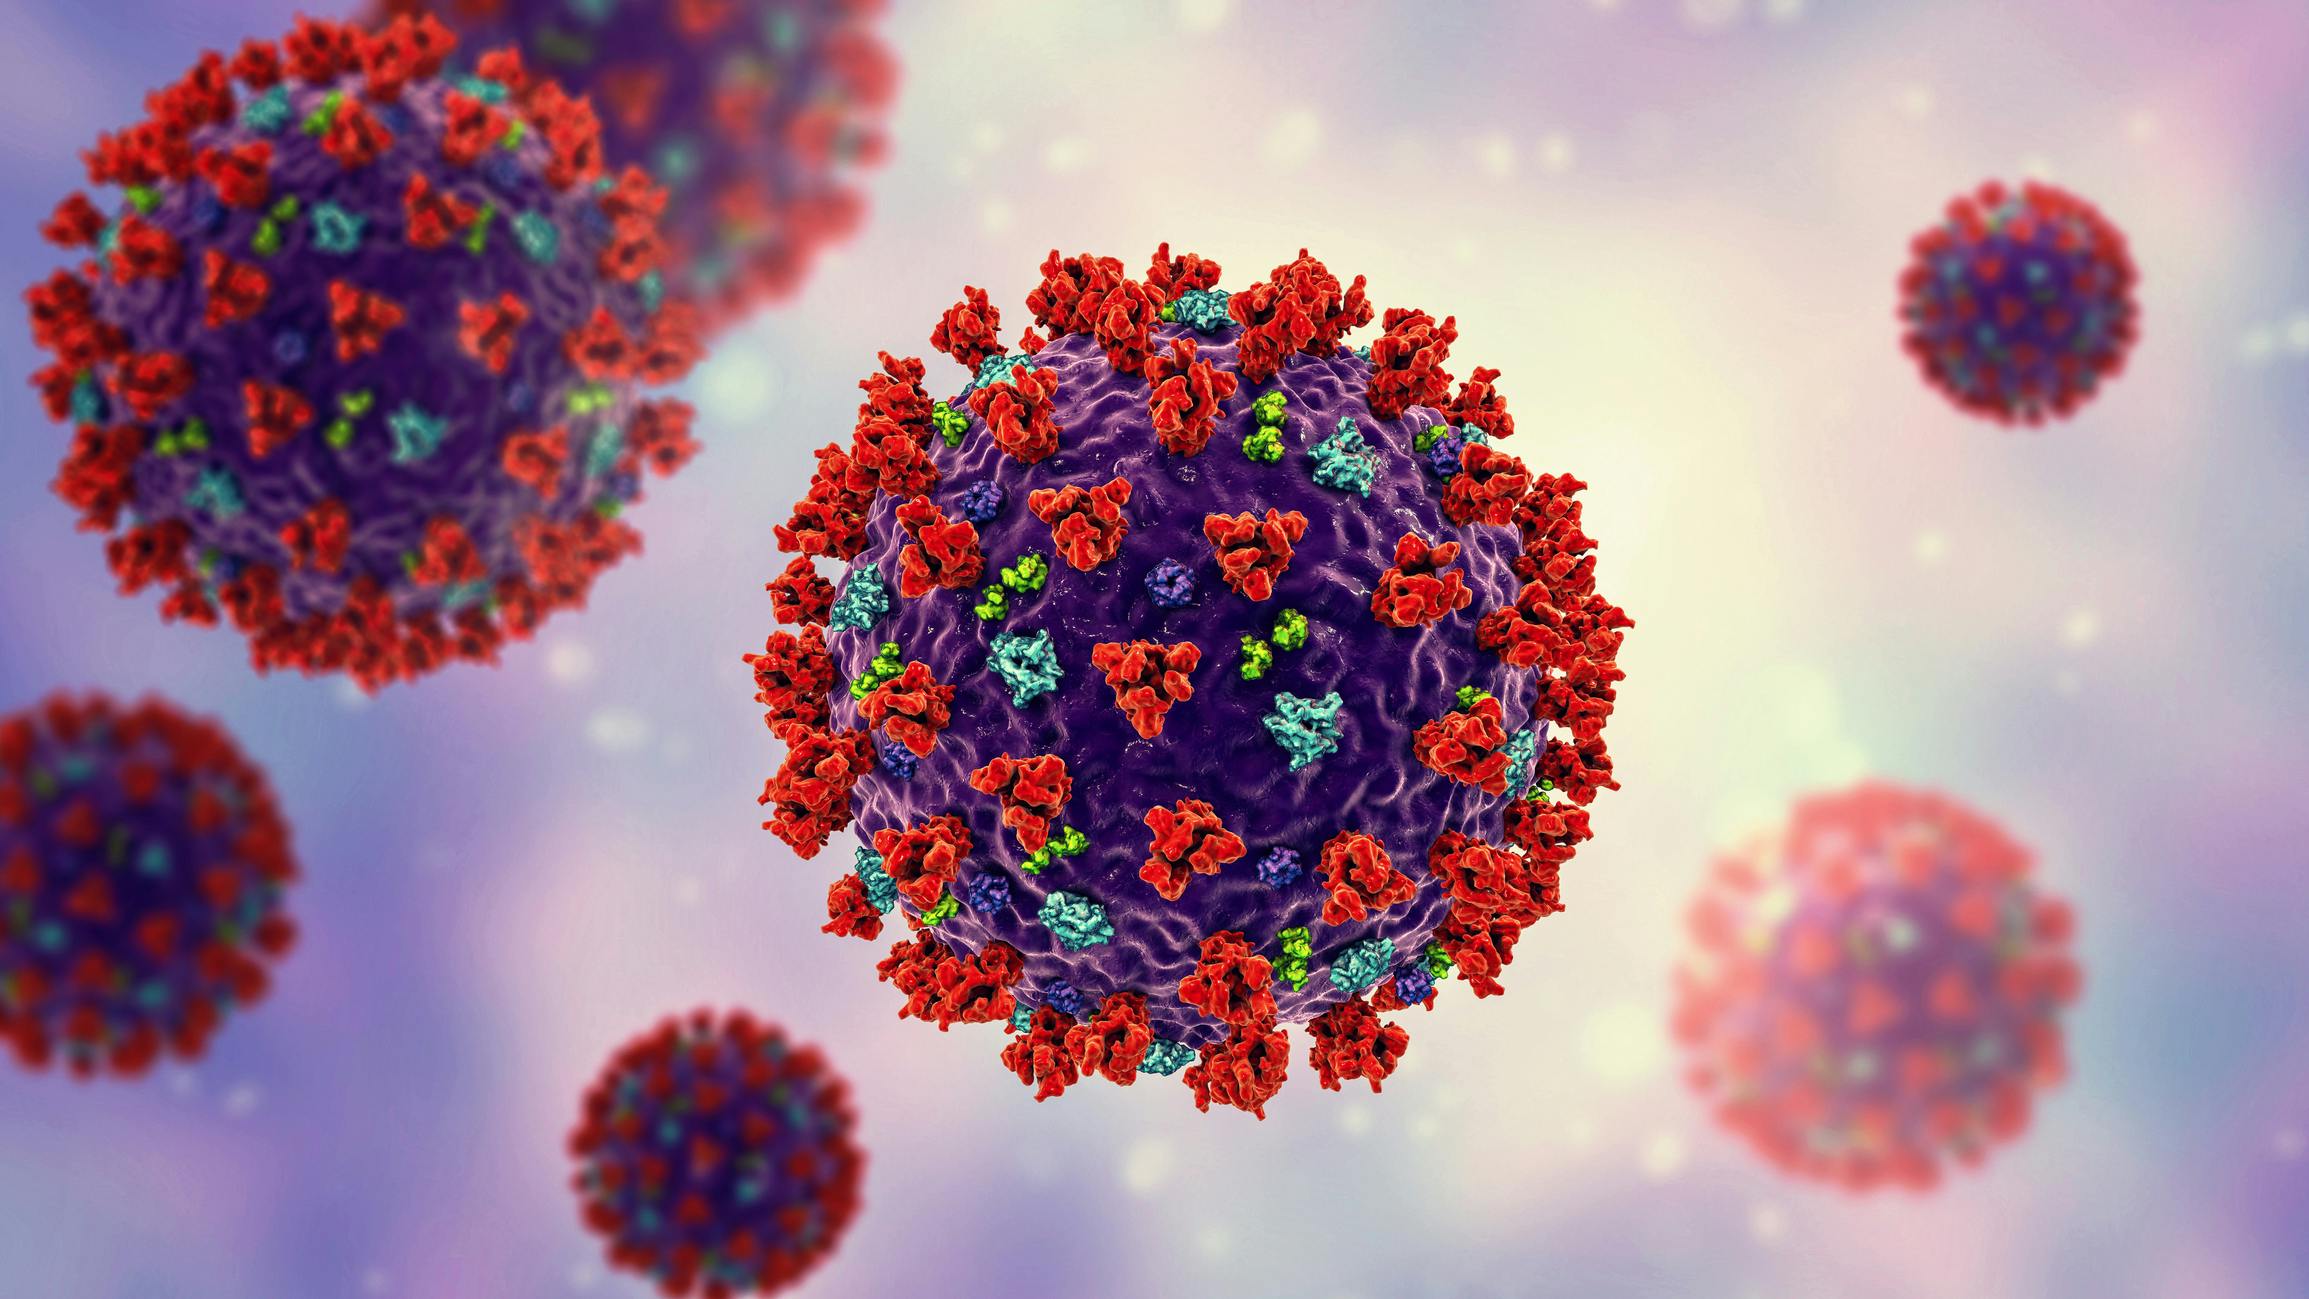 Infecção simultânea por Influenza A e SARS-Cov-2 favorece o desenvolvimento de COVID-19 grave